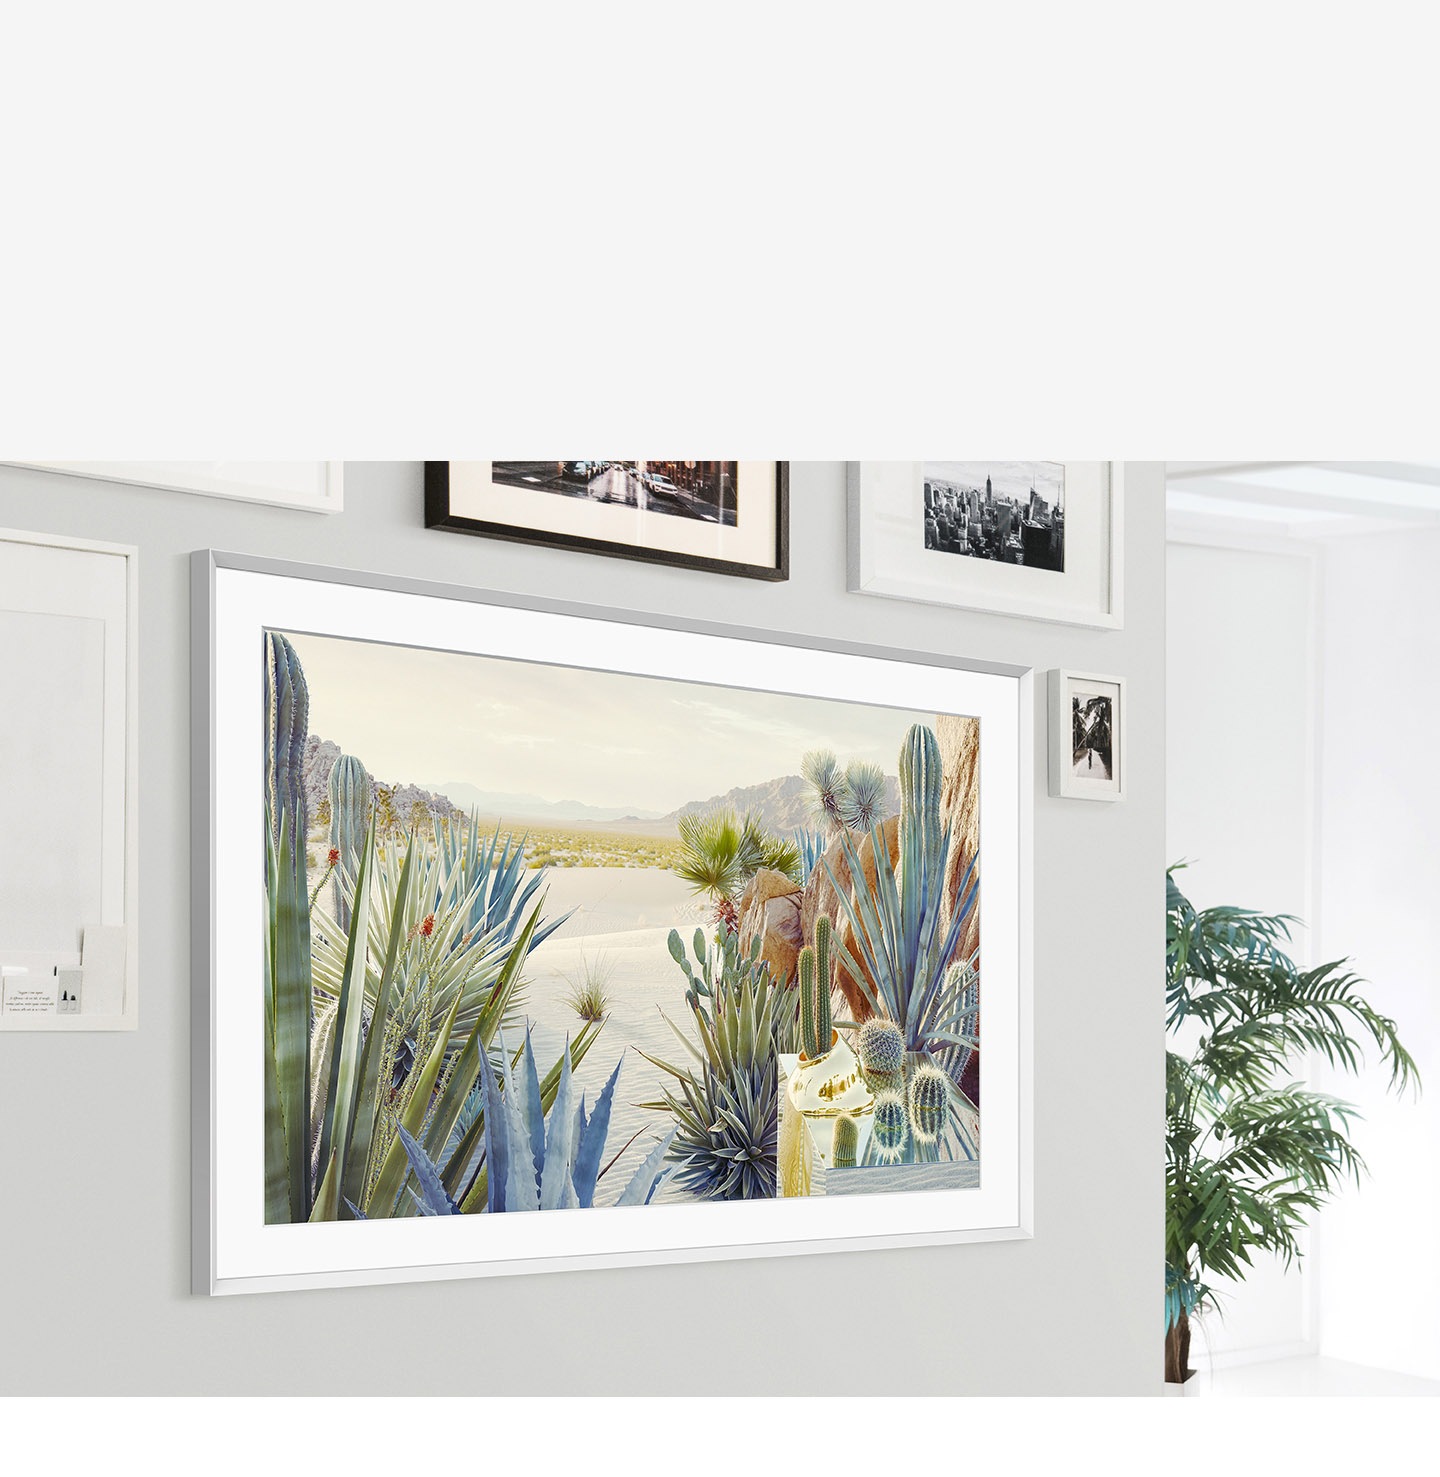 The Frame está montado en la pared del interior de una casa, y el diseño moderno de su marco combina con los otros marcos de cuadros que están en la pared.